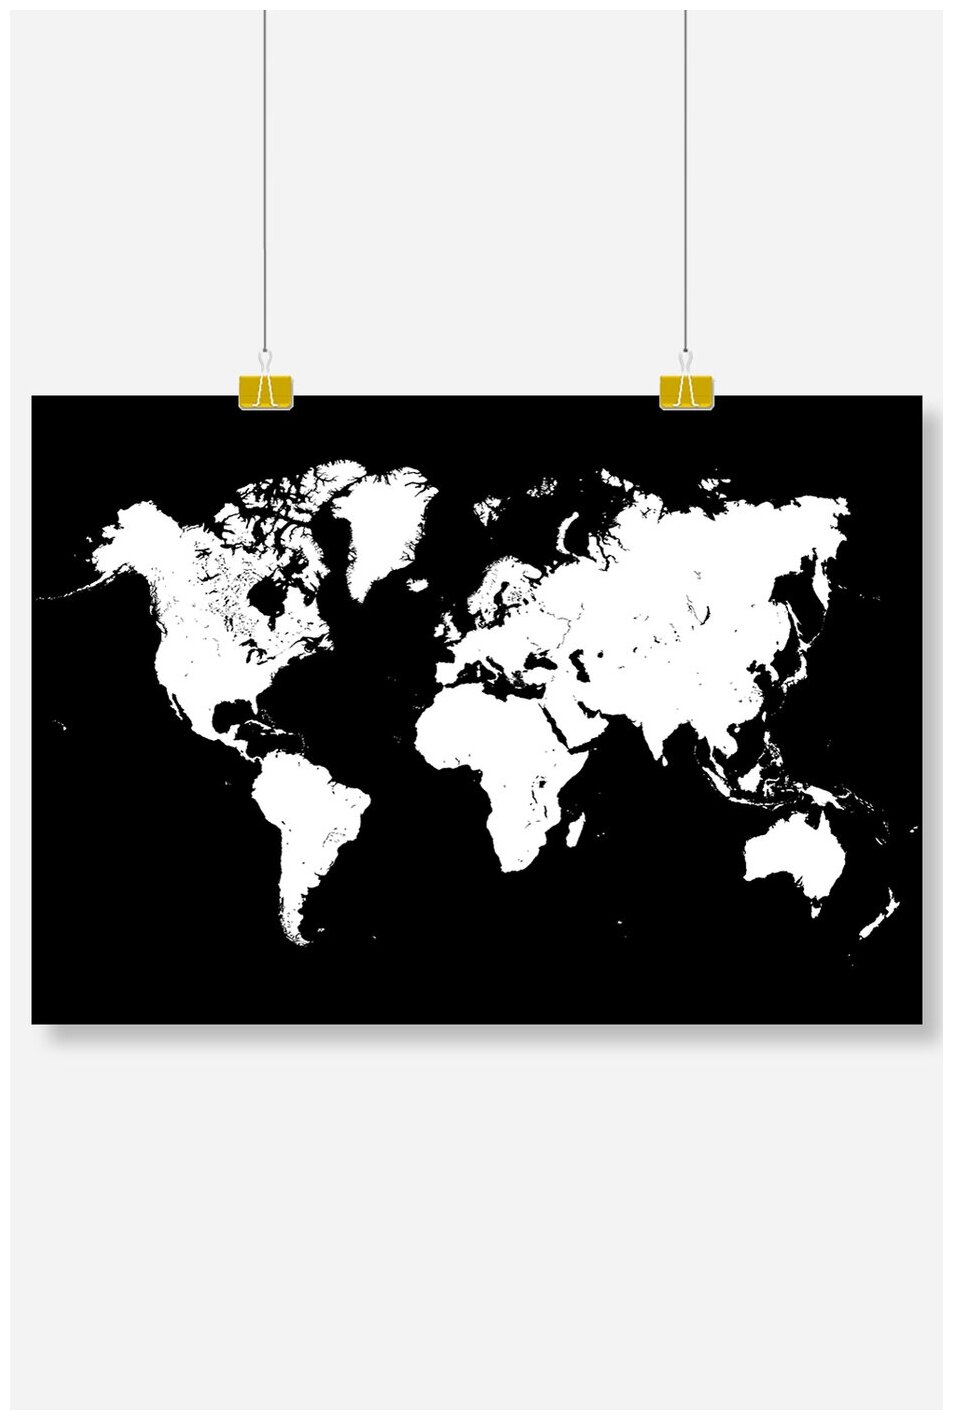 Постер на стену для интерьера Postermarkt Карта мира черно белая, размер 50х70 см, постеры картины для интерьера в тубусе